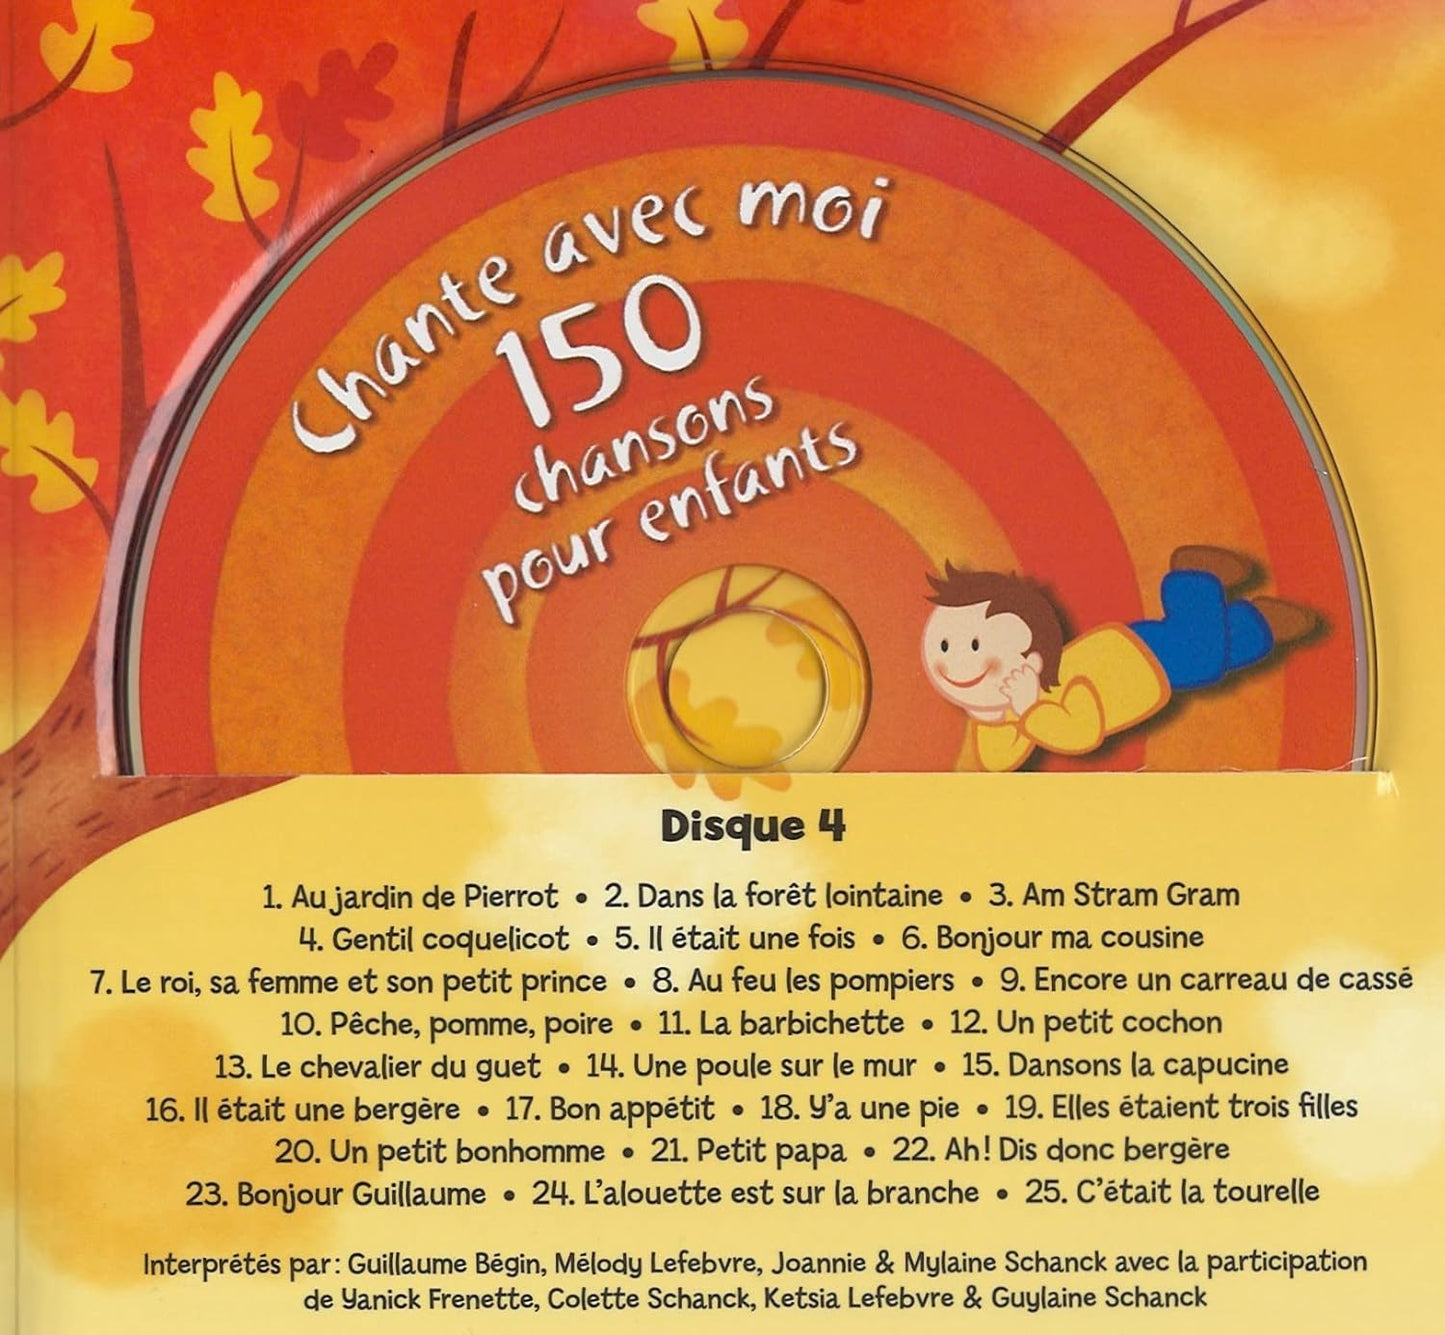 150 Chansons Pour Enfants [Audio CD] Chante Avec Moi